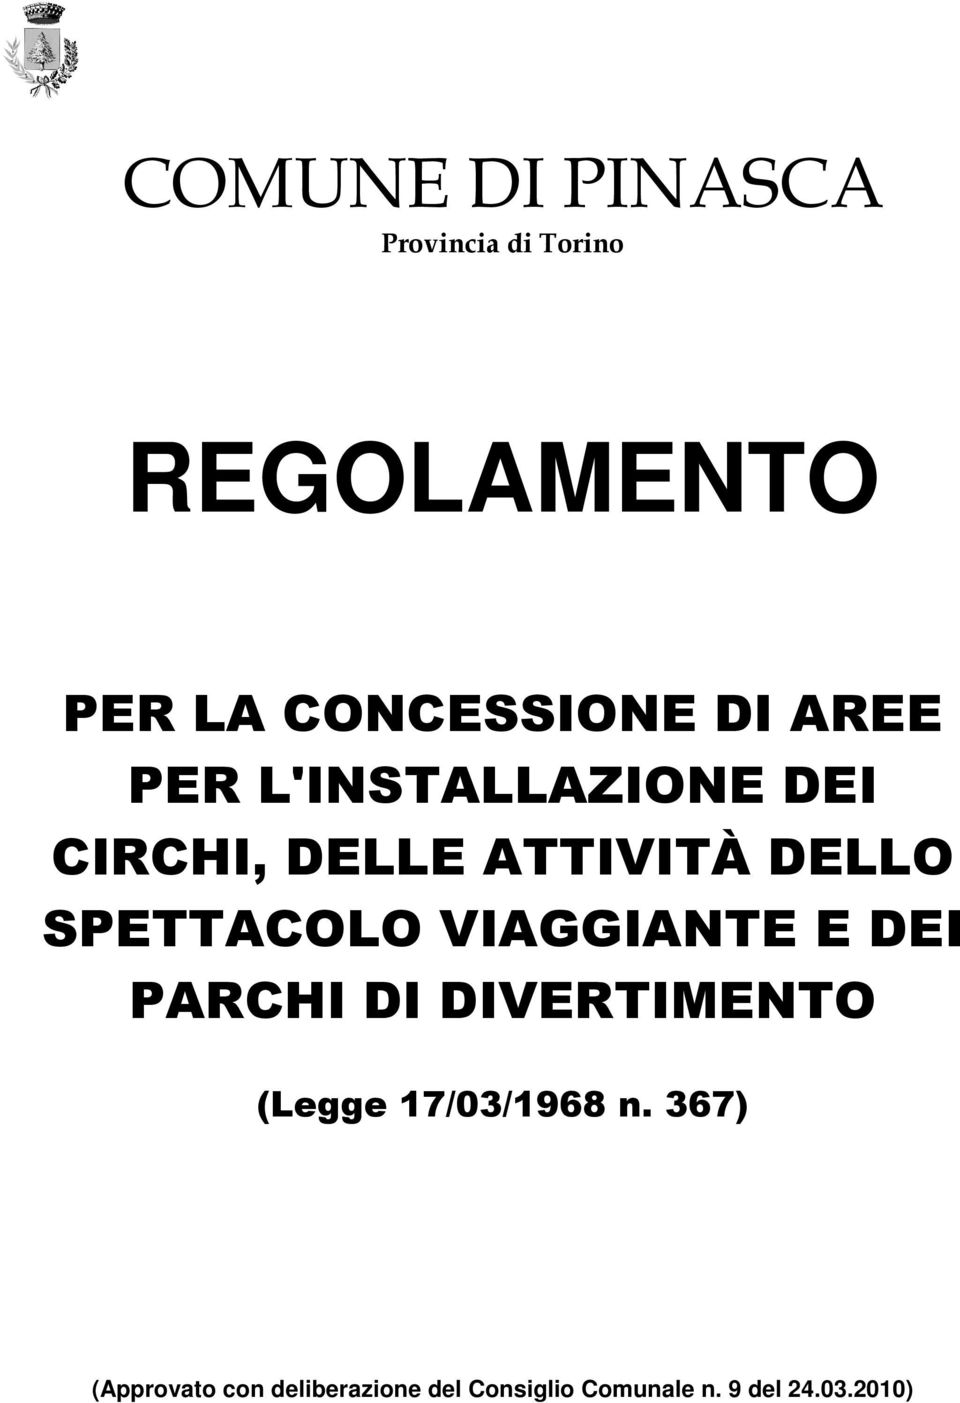 SPETTACOLO VIAGGIANTE E DEI PARCHI DI DIVERTIMENTO (Legge 17/03/1968